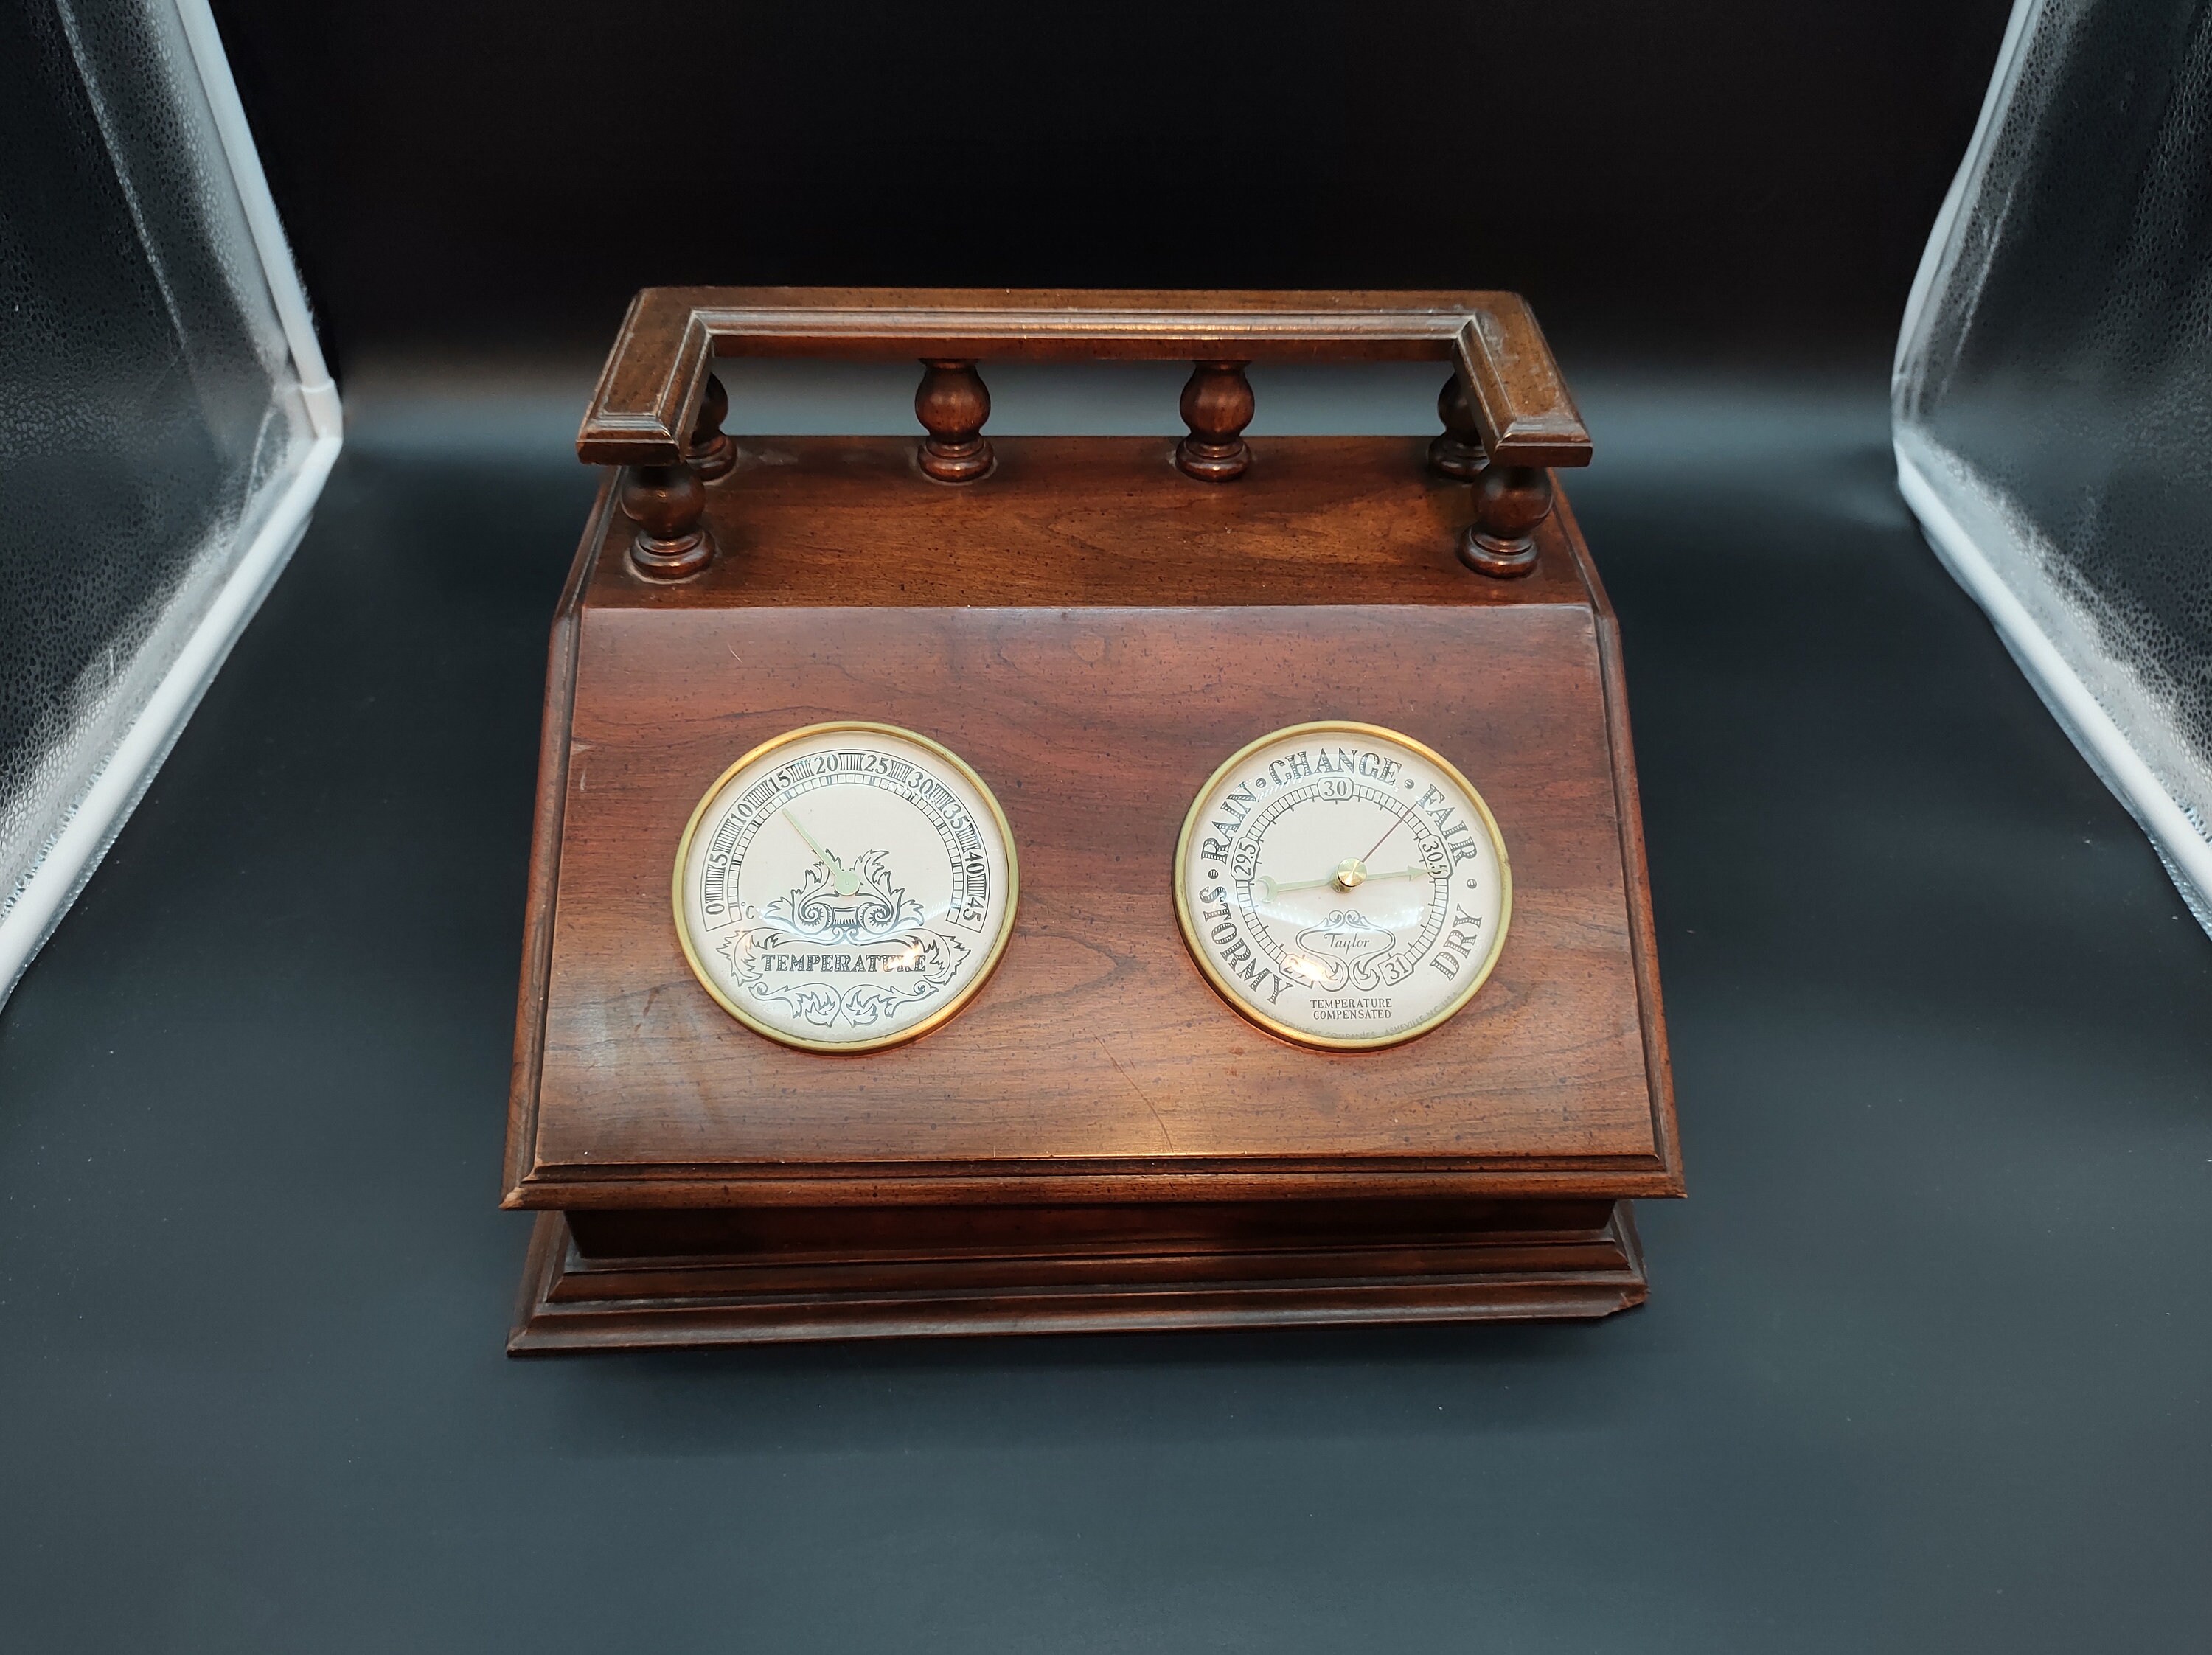 Barometer And Clock Exclusive Desk Set Aesthetic Indoor Outdoor Decoration